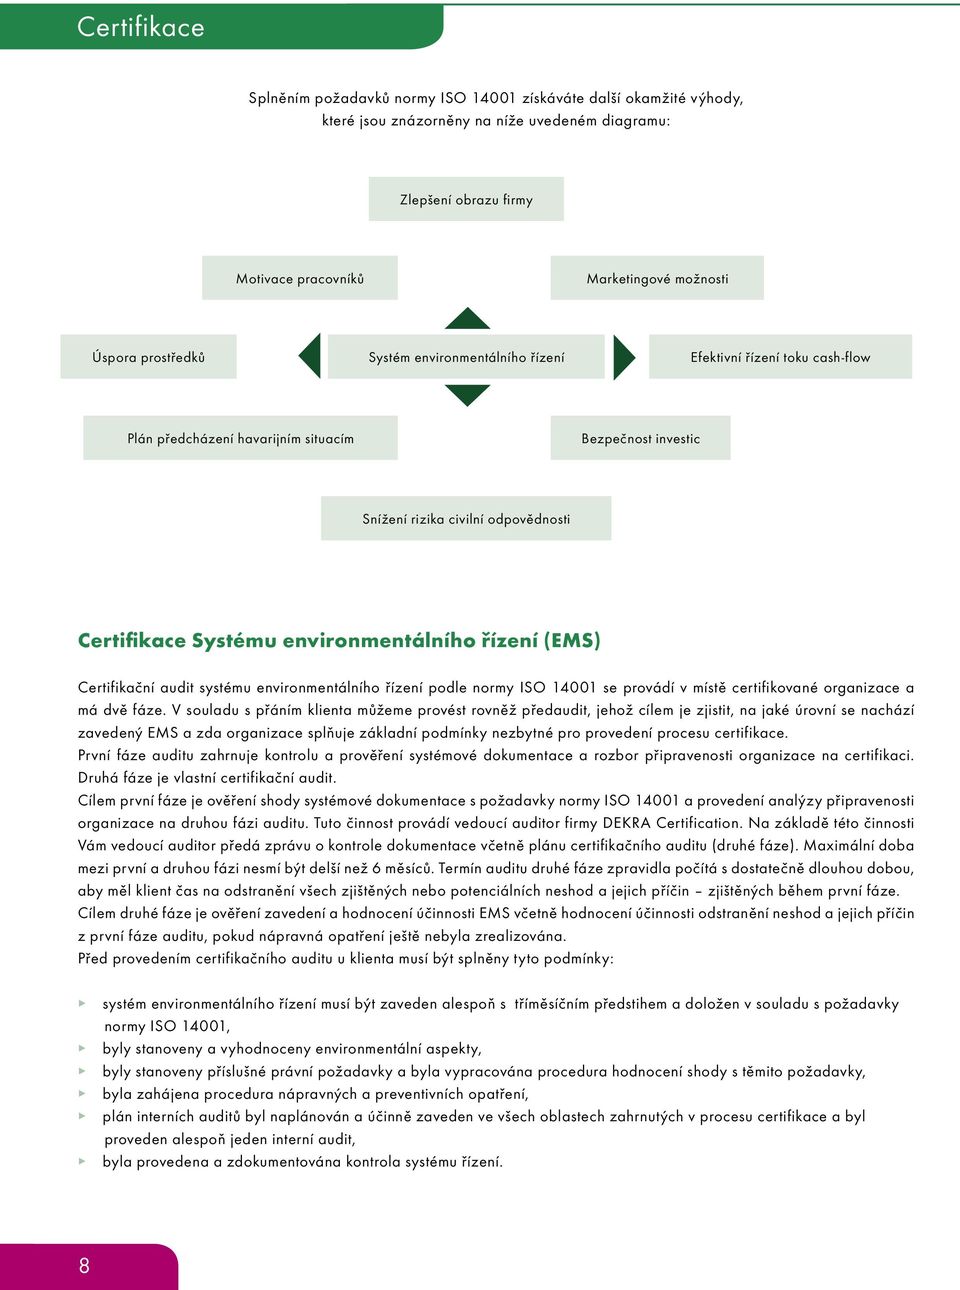 environmentálního řízení (EMS) Certifikační audit systému environmentálního řízení podle normy ISO 14001 se provádí v místě certifikované organizace a má dvě fáze.